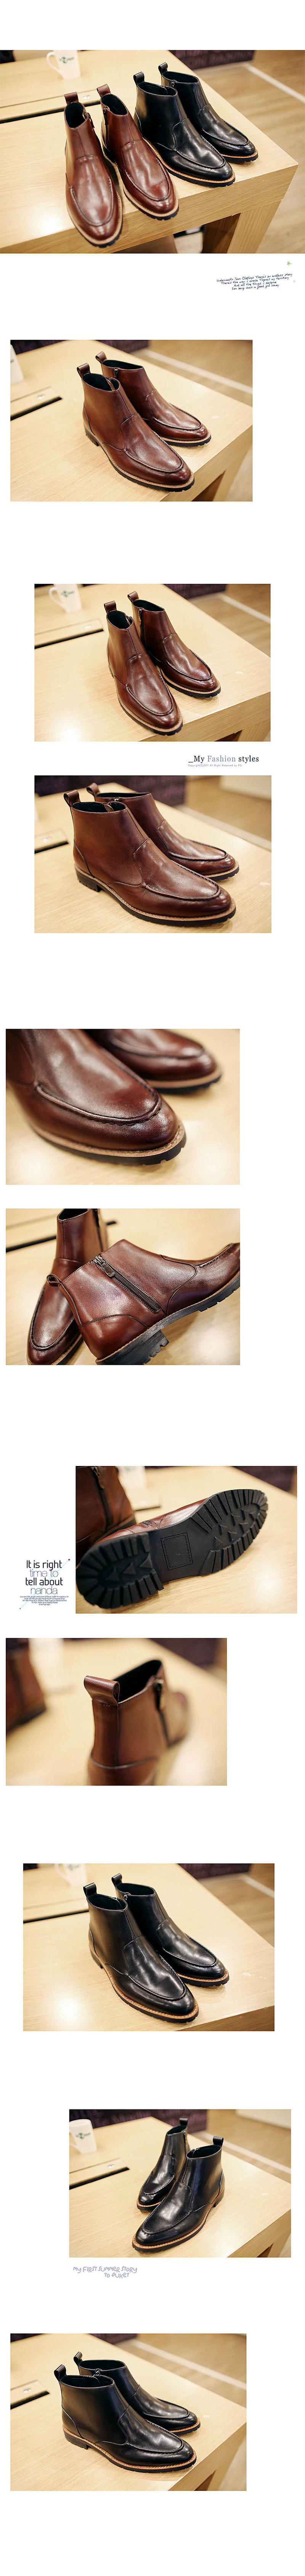 MR.benyou英伦冬季男士擦色系带头层牛皮短靴298/126-6